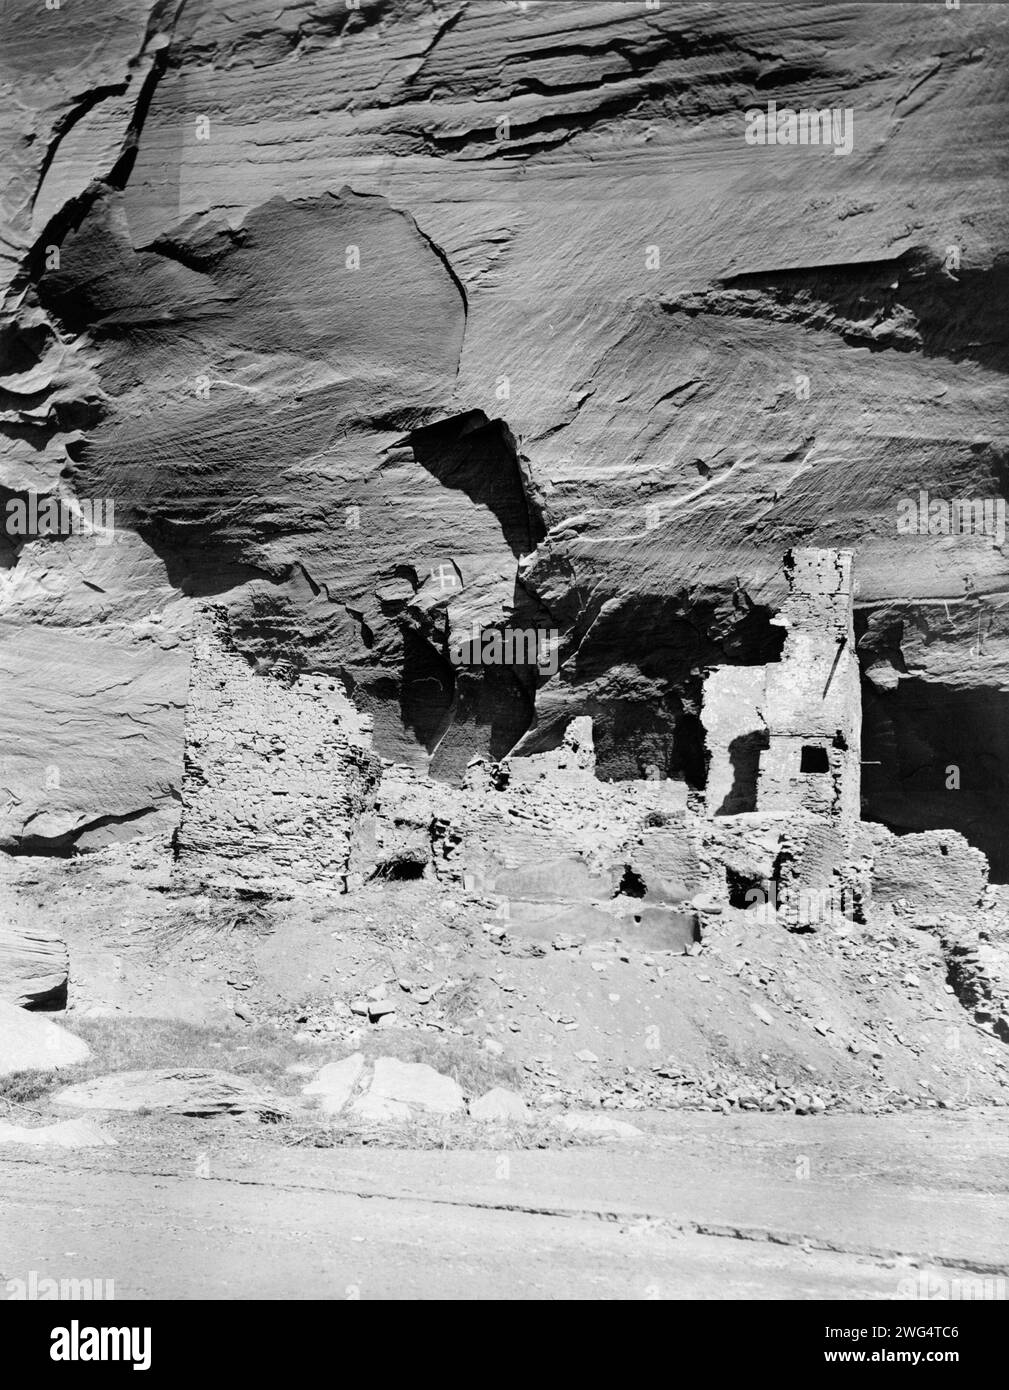 Ruines d'antilope montrant des décorations préhistoriques, 1907, c1907. Ruines des habitations des falaises indiennes Navajo. Banque D'Images